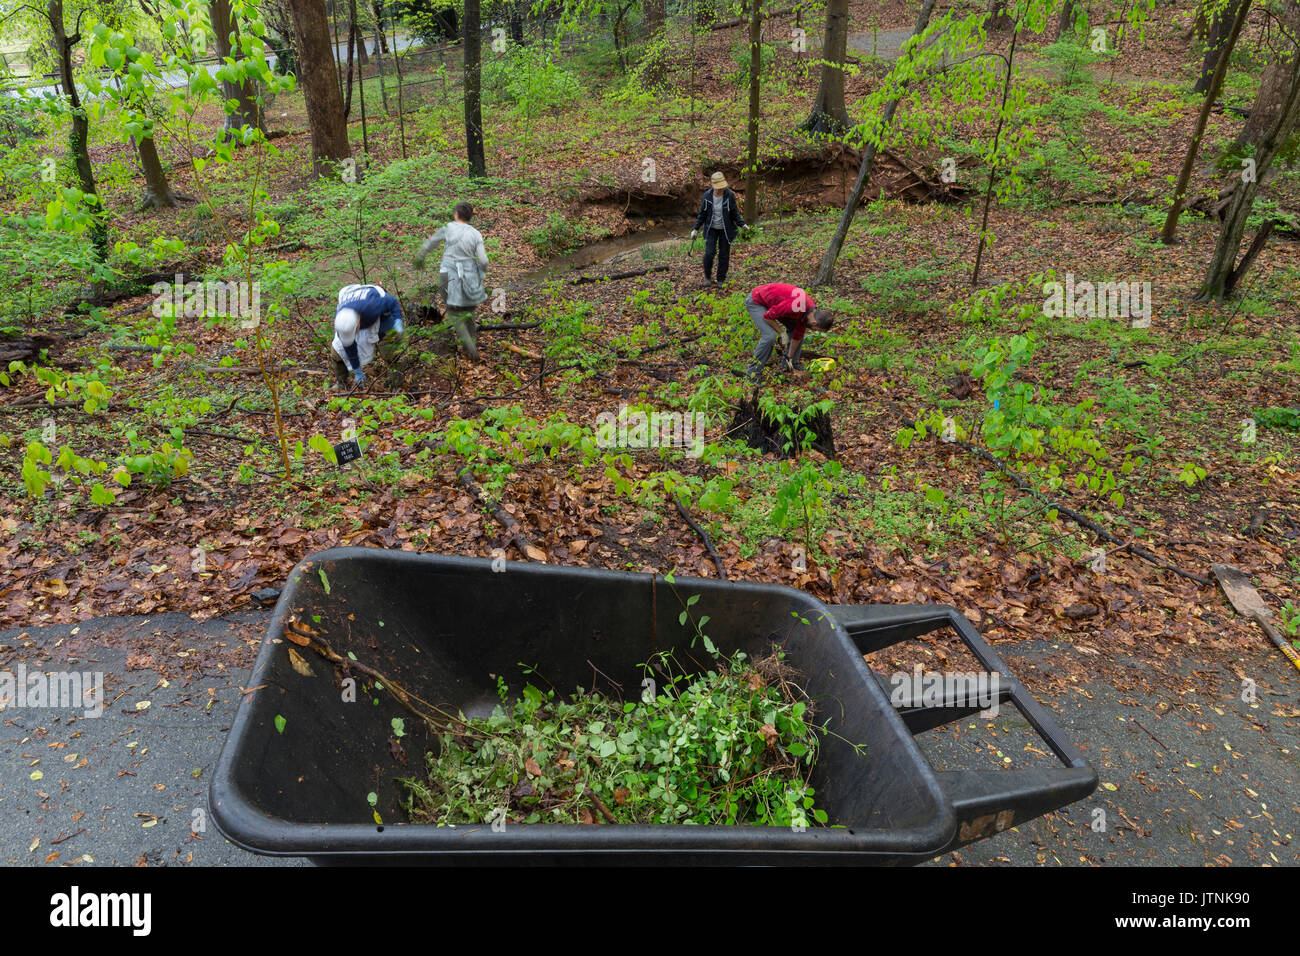 Freiwillige entfernen von invasiven Arten, Fernbank Wald, Atlanta, Georgia. Fernbank Wald ist ein 65 Hektar großen städtischen alte Piemont Wald in der Innenstadt von Atlanta, Georgia Stockfoto